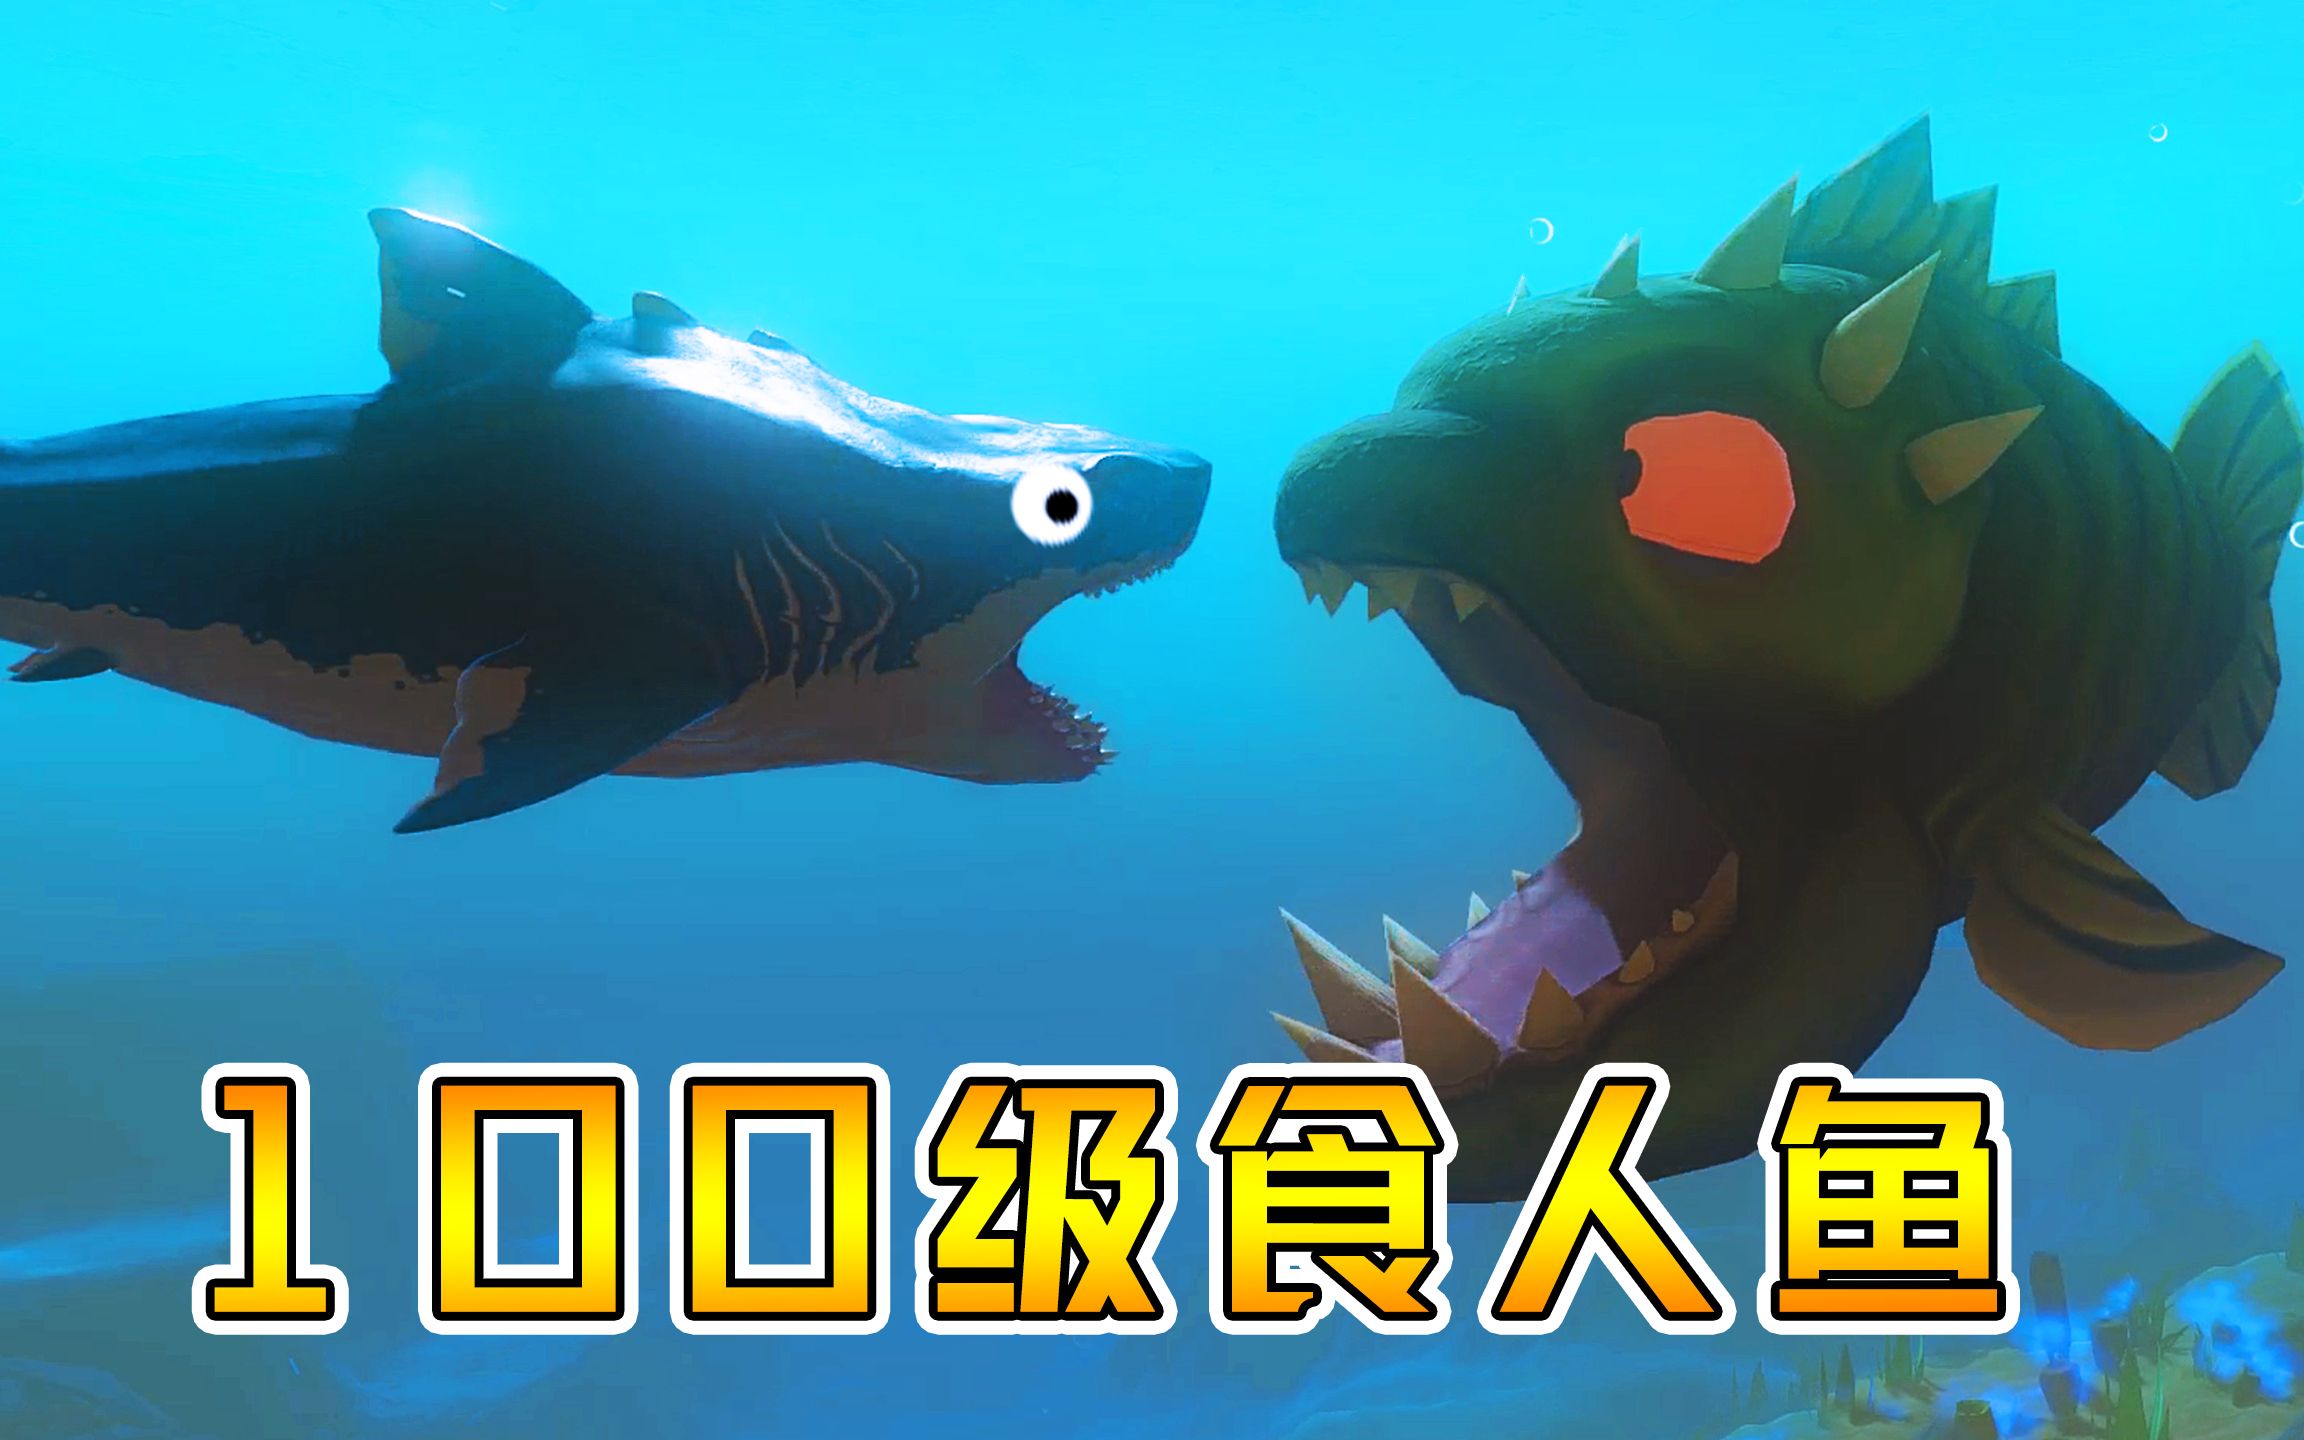 海底大猎杀:泽君化身食人鱼,成长到100级!向巨齿鲨复仇